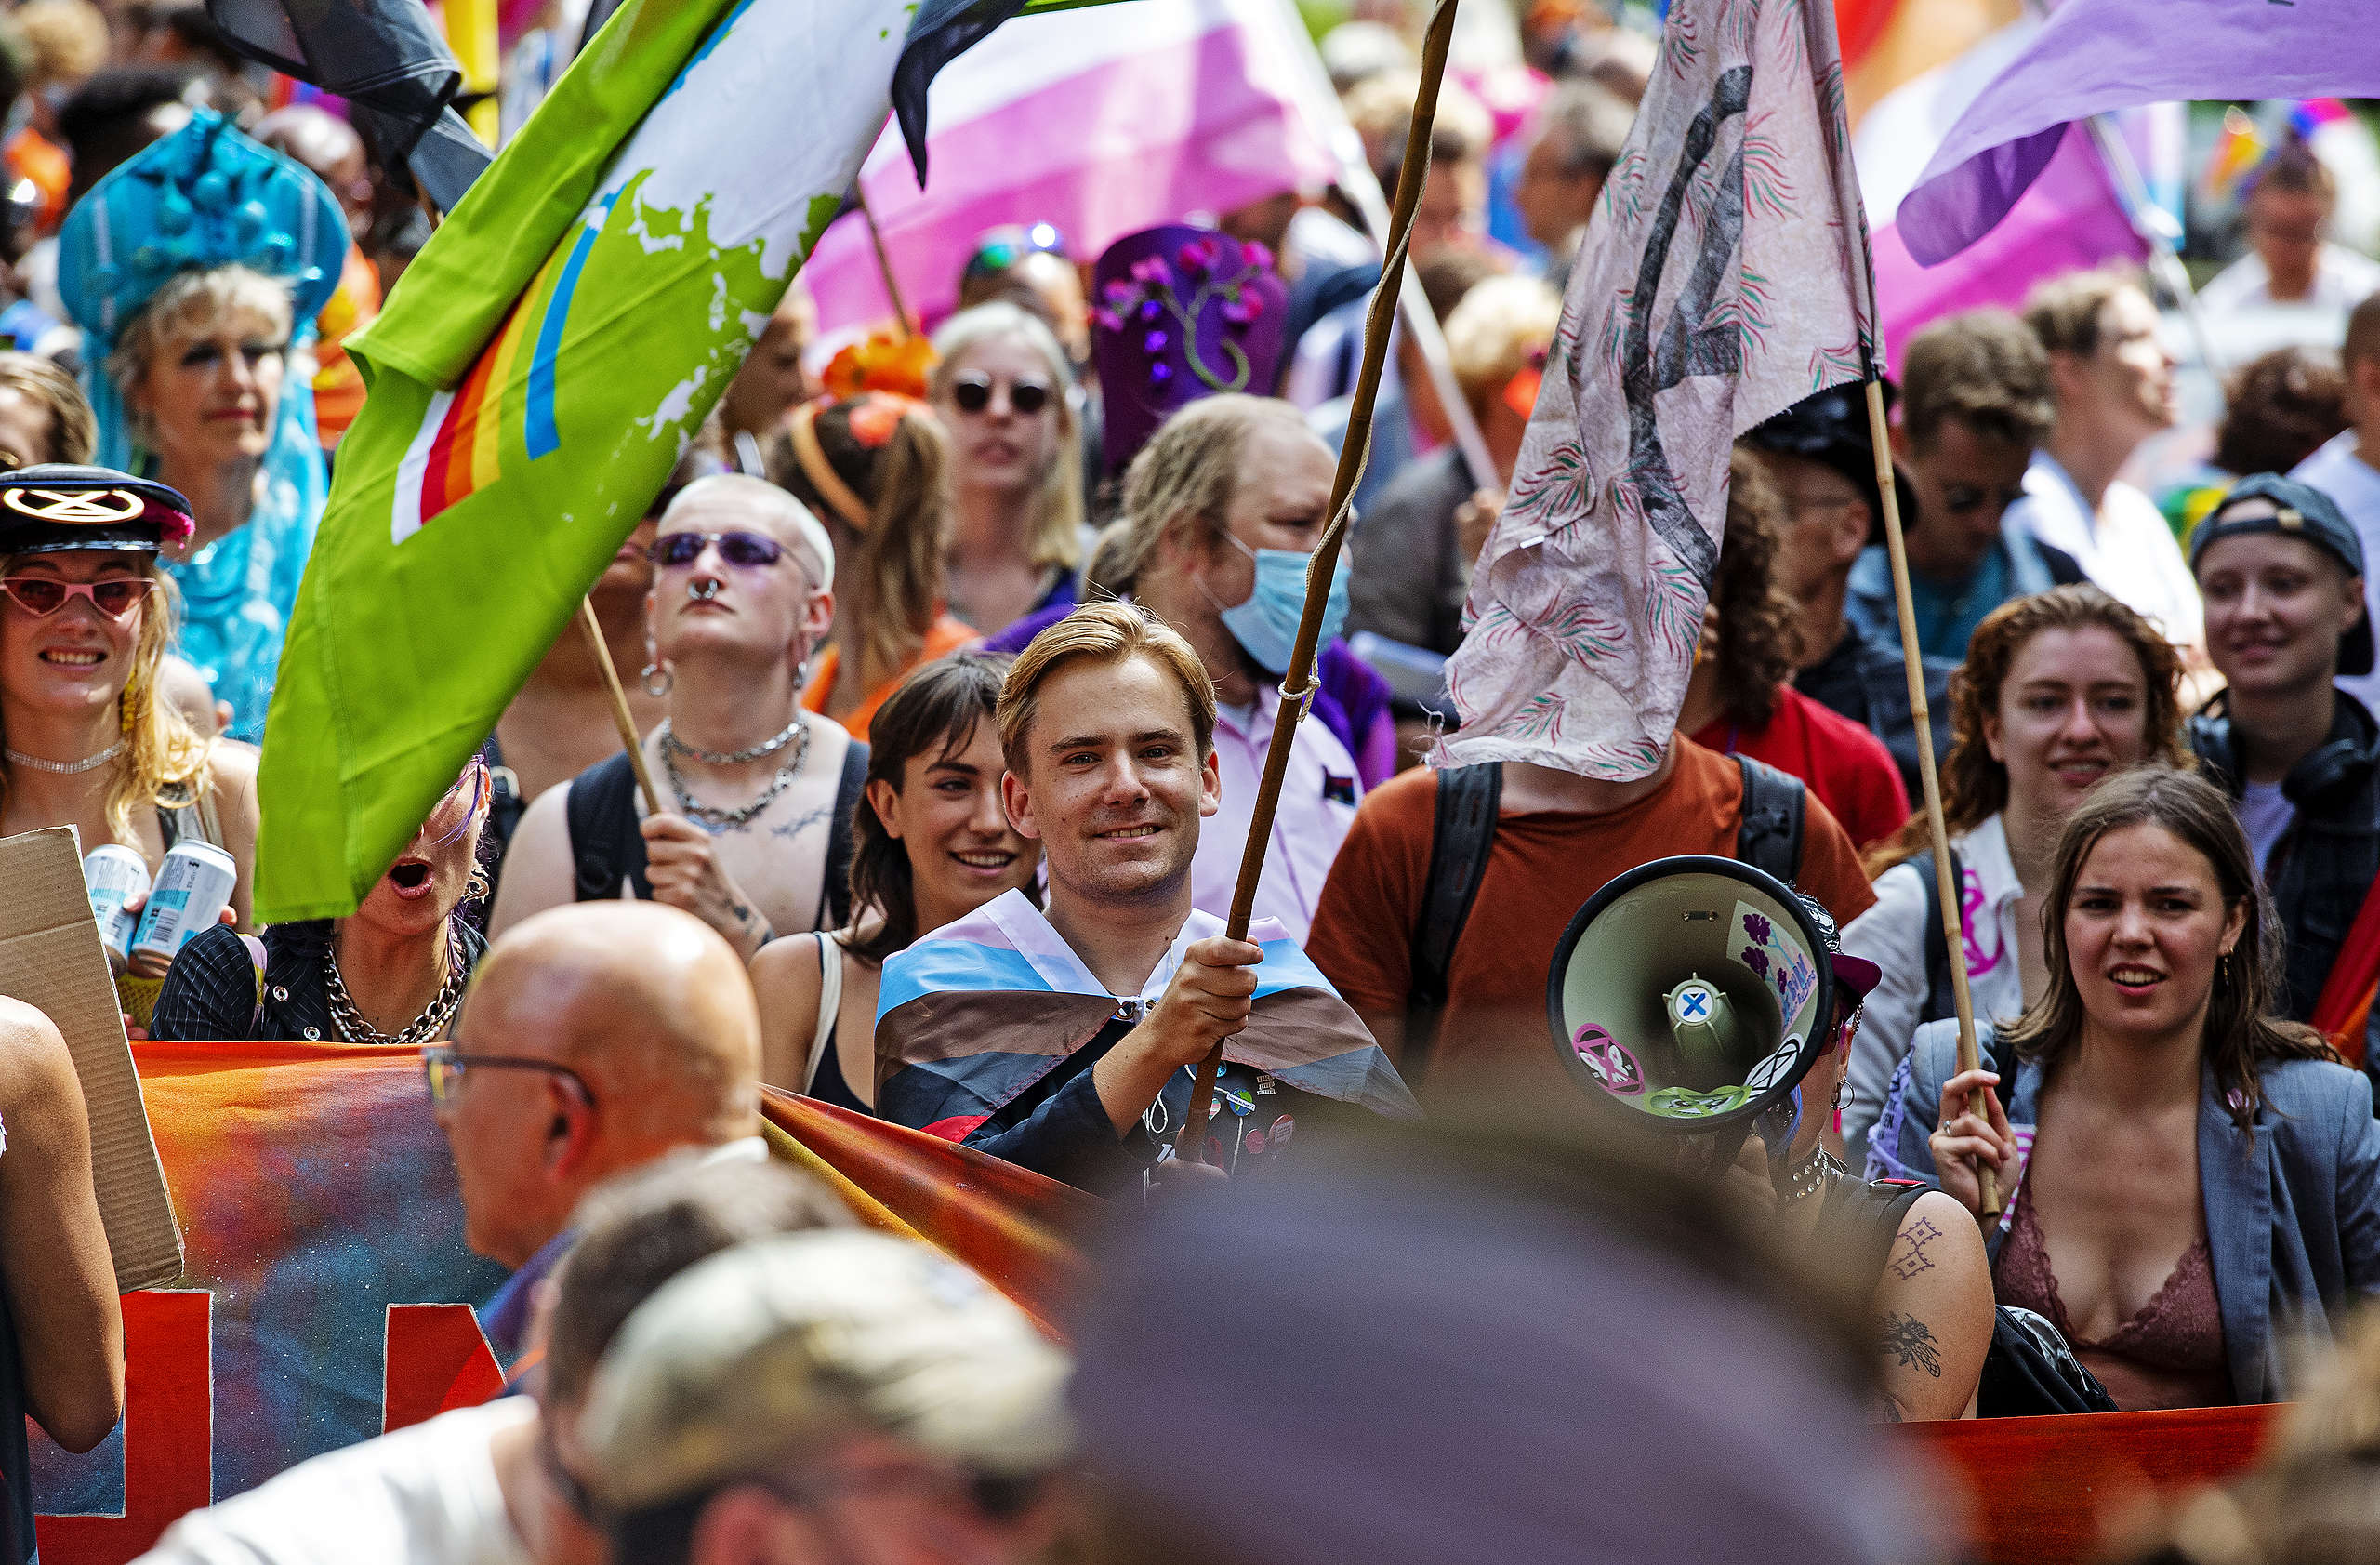 Diederick van den Ende walking with Pride. © Marten van Dijl / Greenpeace